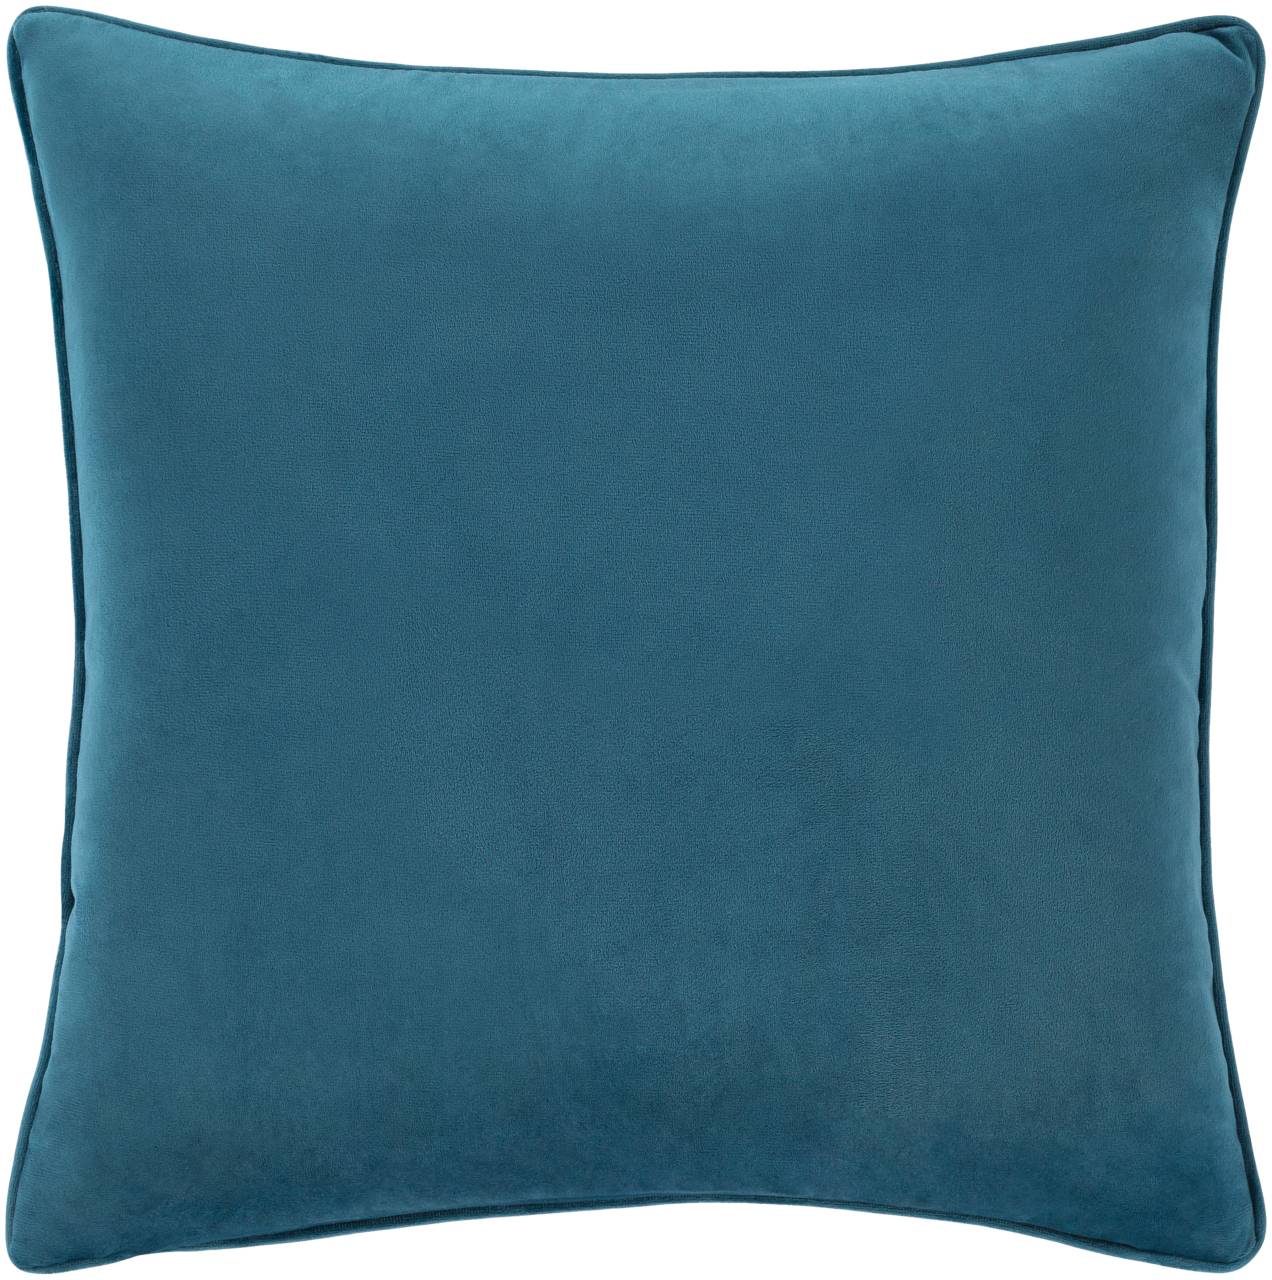 Lummen Bright Blue Pillow Cover